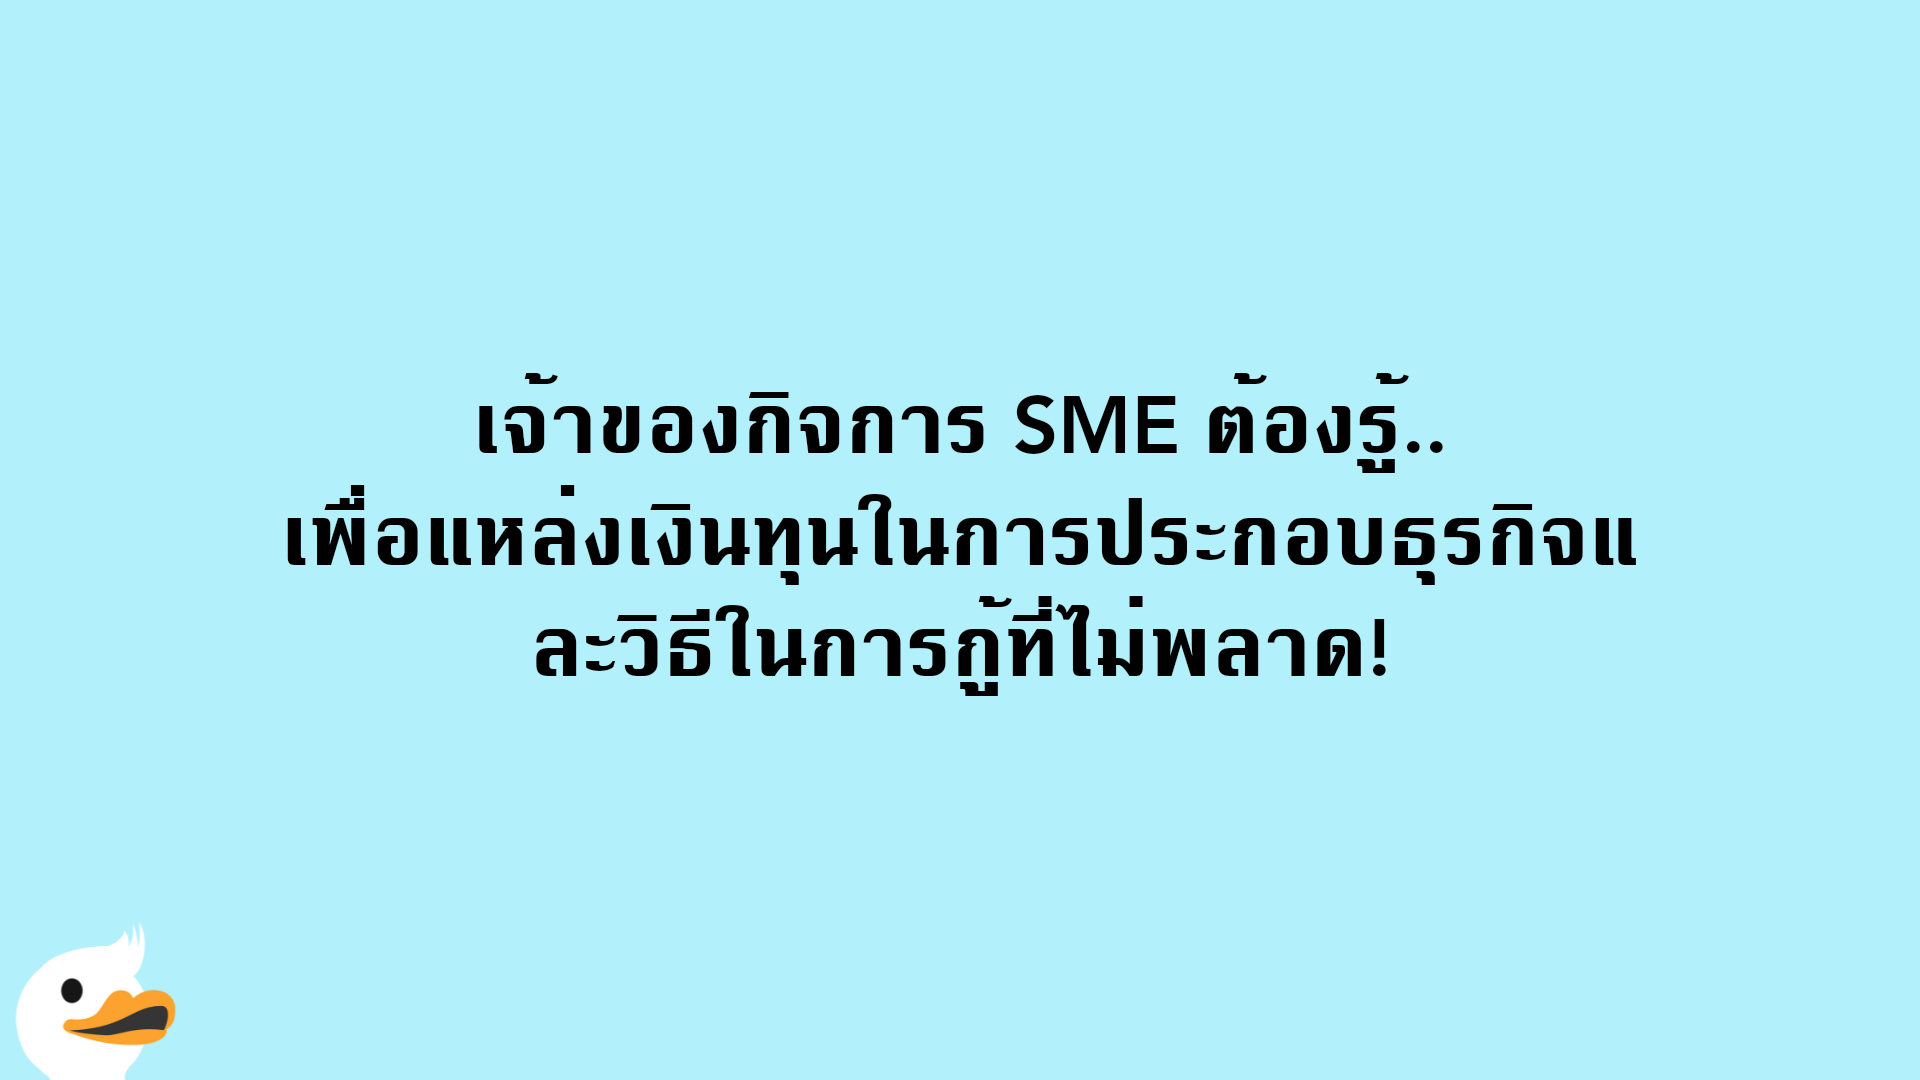 เจ้าของกิจการ SME ต้องรู้.. เพื่อแหล่งเงินทุนในการประกอบธุรกิจและวิธีในการกู้ที่ไม่พลาด!